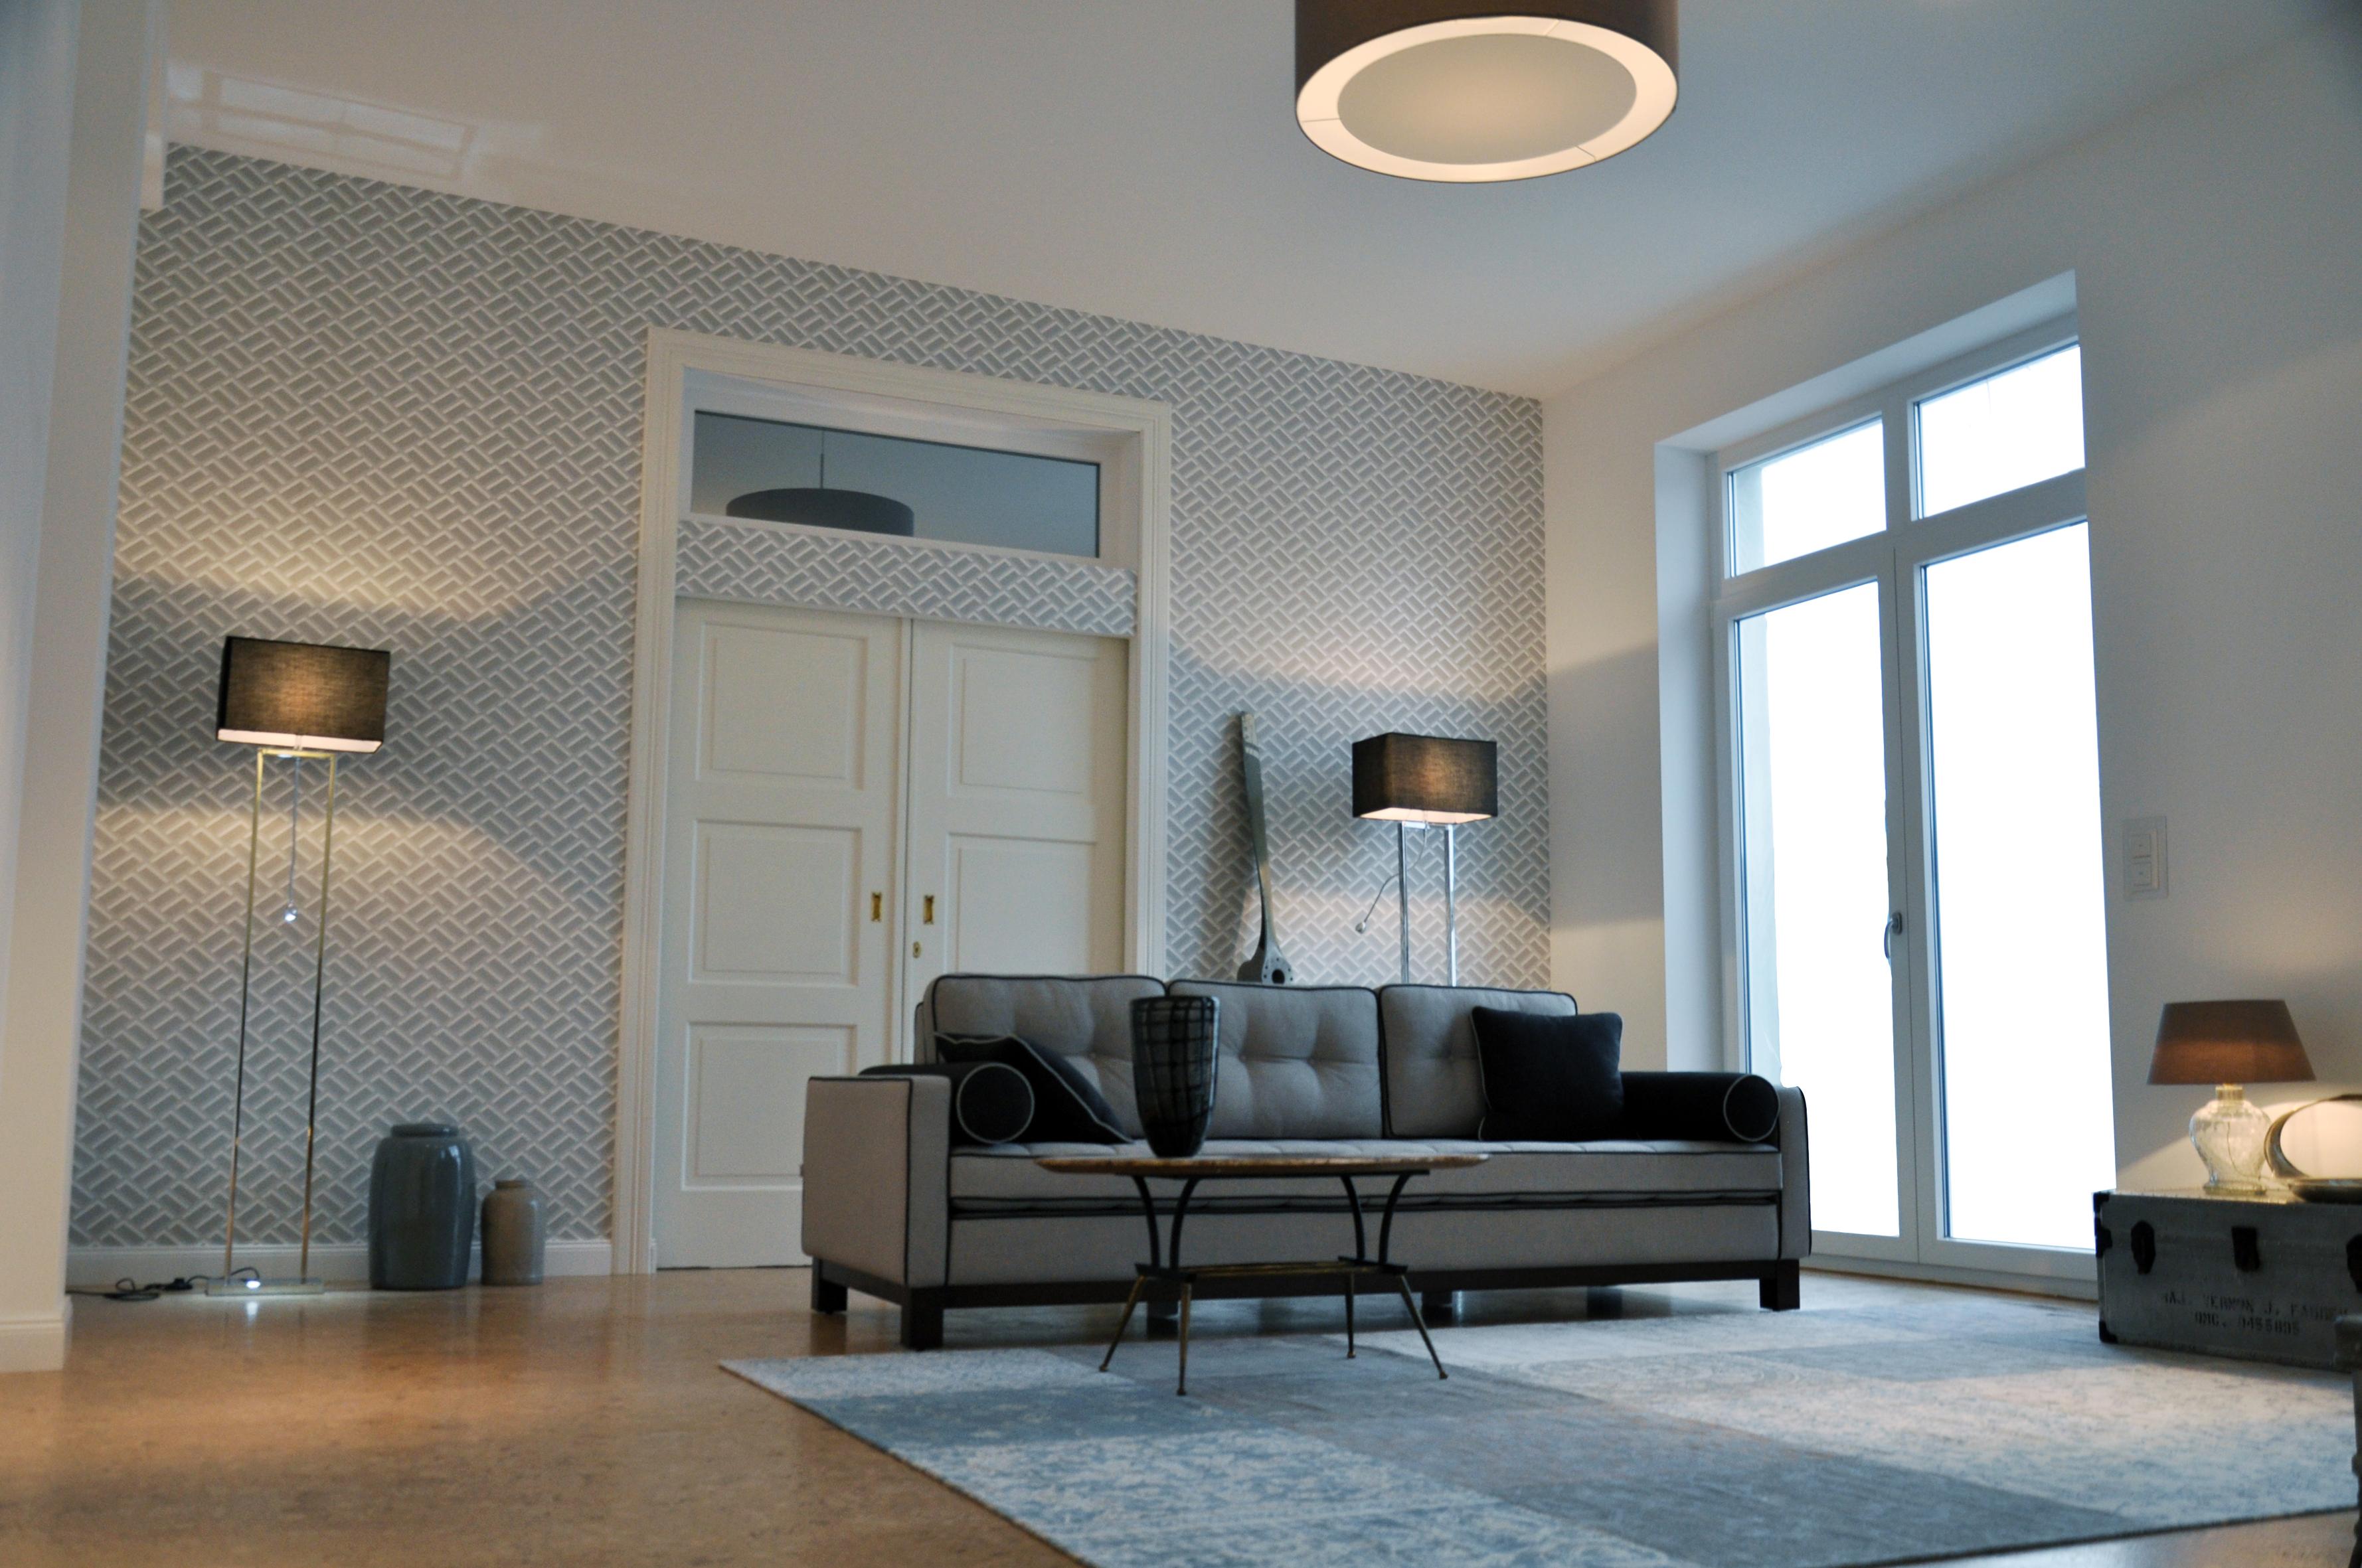 Wohnzimmer im Industrial Glamour 130m2 Loft im Stil der 20er Jahre zu mieten #wohnzimmer #20erjahre ©Tatjana Adelt